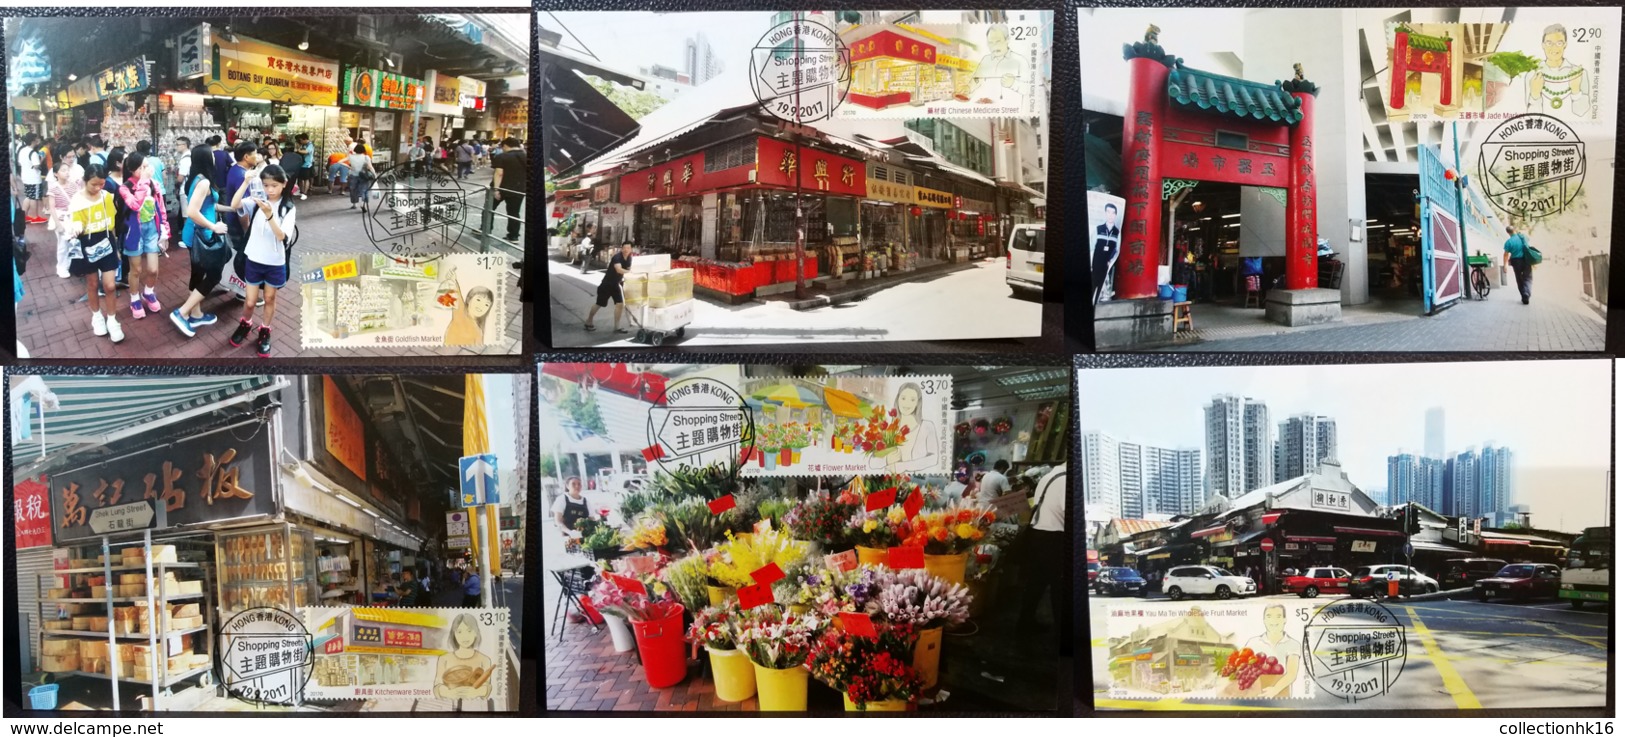 Hong Kong Shopping Streets (Fruit, Flower, Jade ...) 2017 Hong Kong Maximum Card MC Set (Pictorial Postmark) (6 Cards) - Maximumkarten